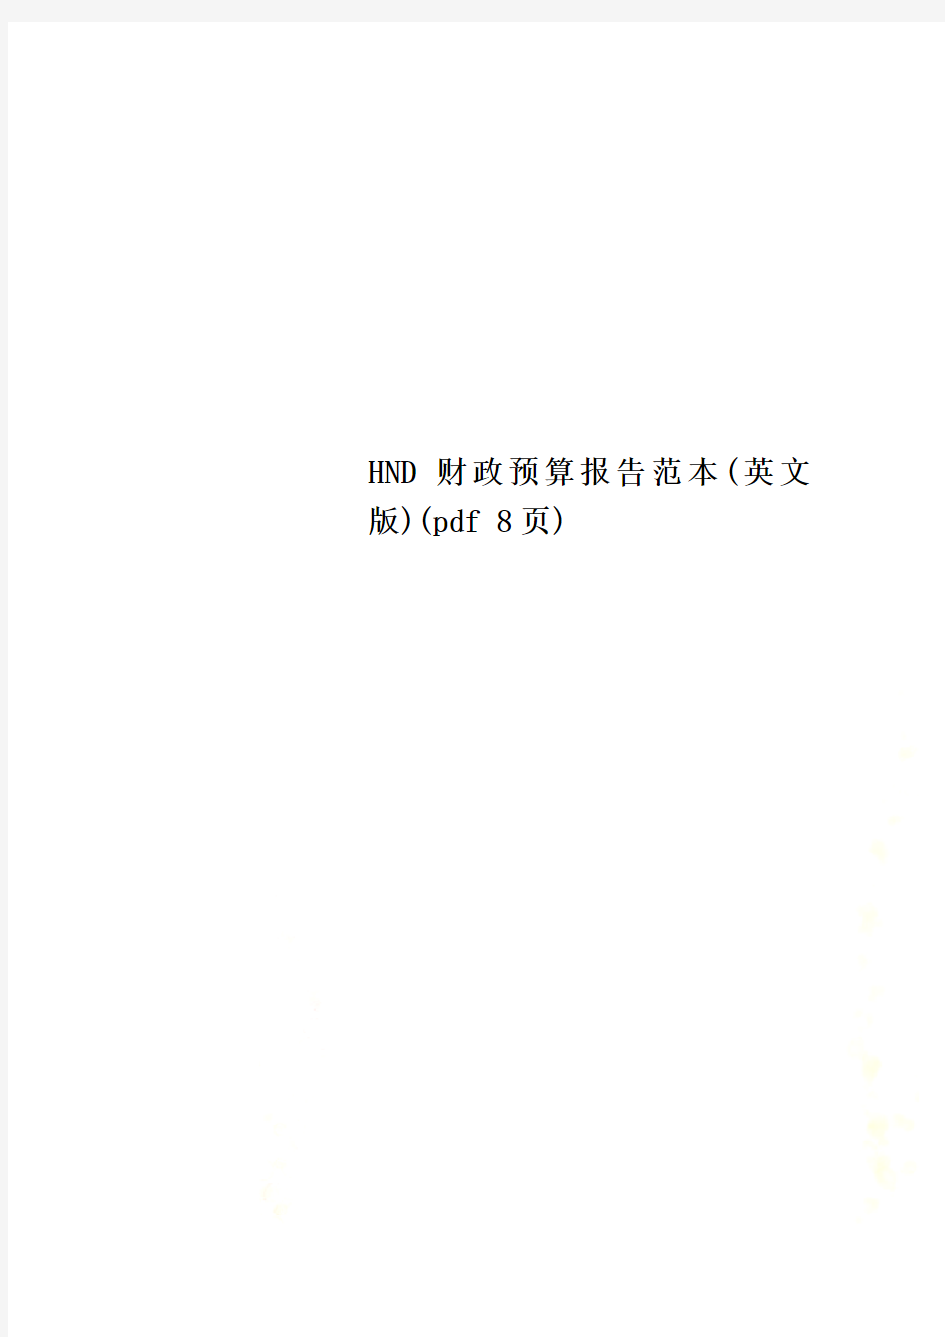 HND财政预算报告范本(英文版)(pdf 8页)